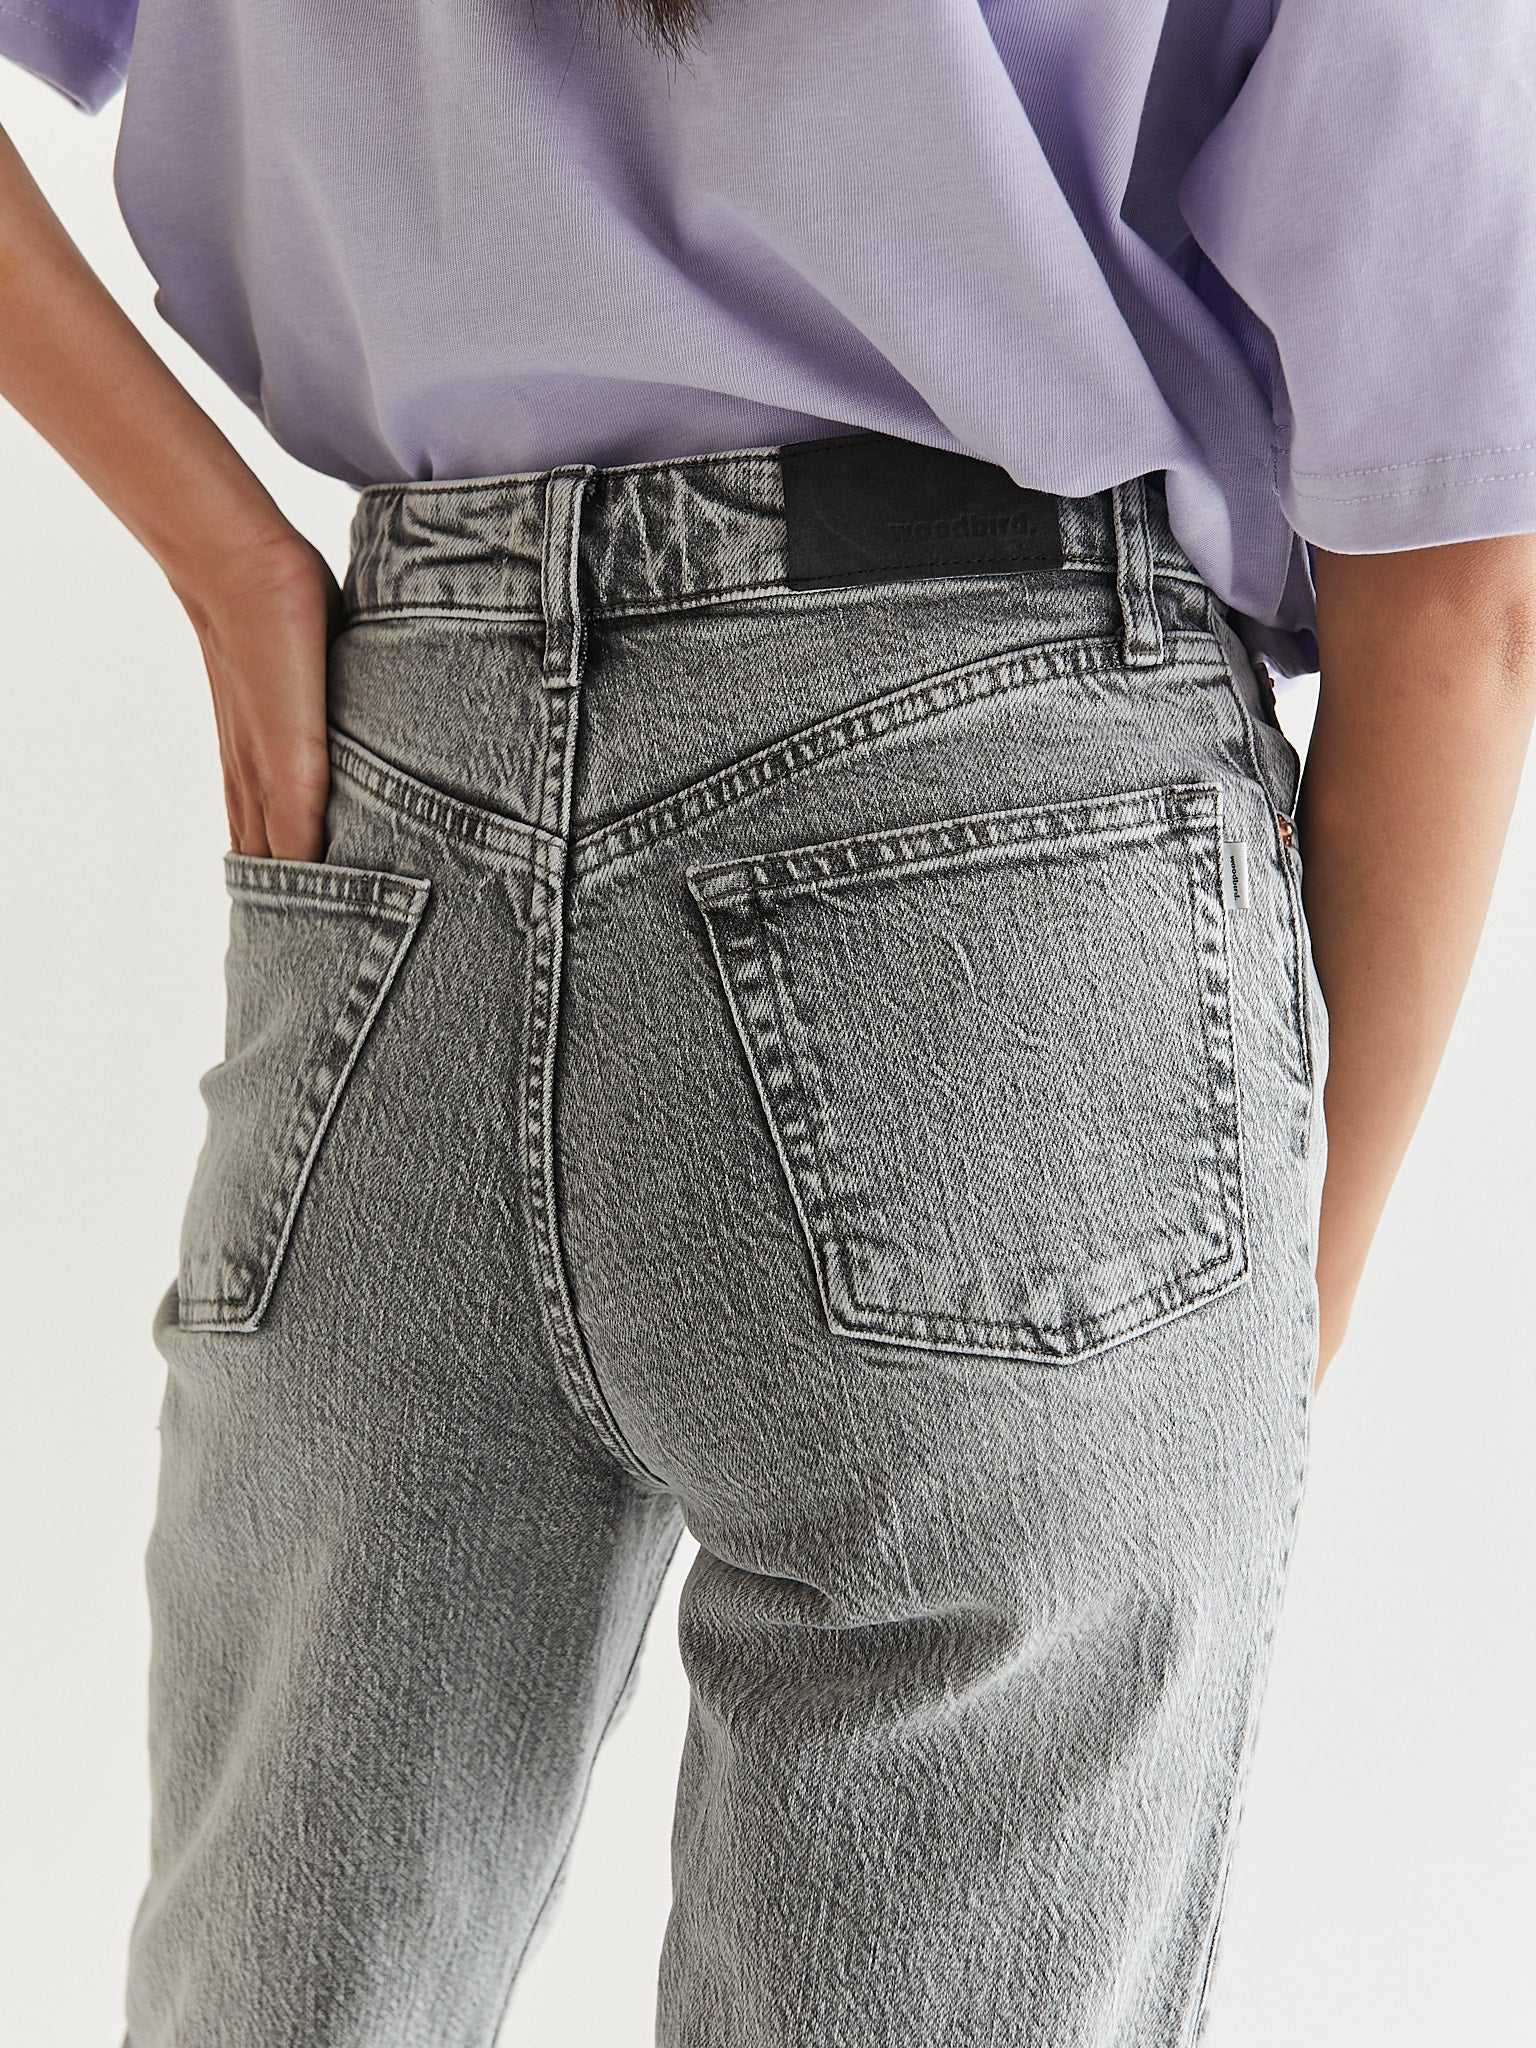 Ladies High Waist Grey Jeans, Size : 28, 30, 32, 34, 36, 38, Pattern :  Plain at Best Price in Delhi